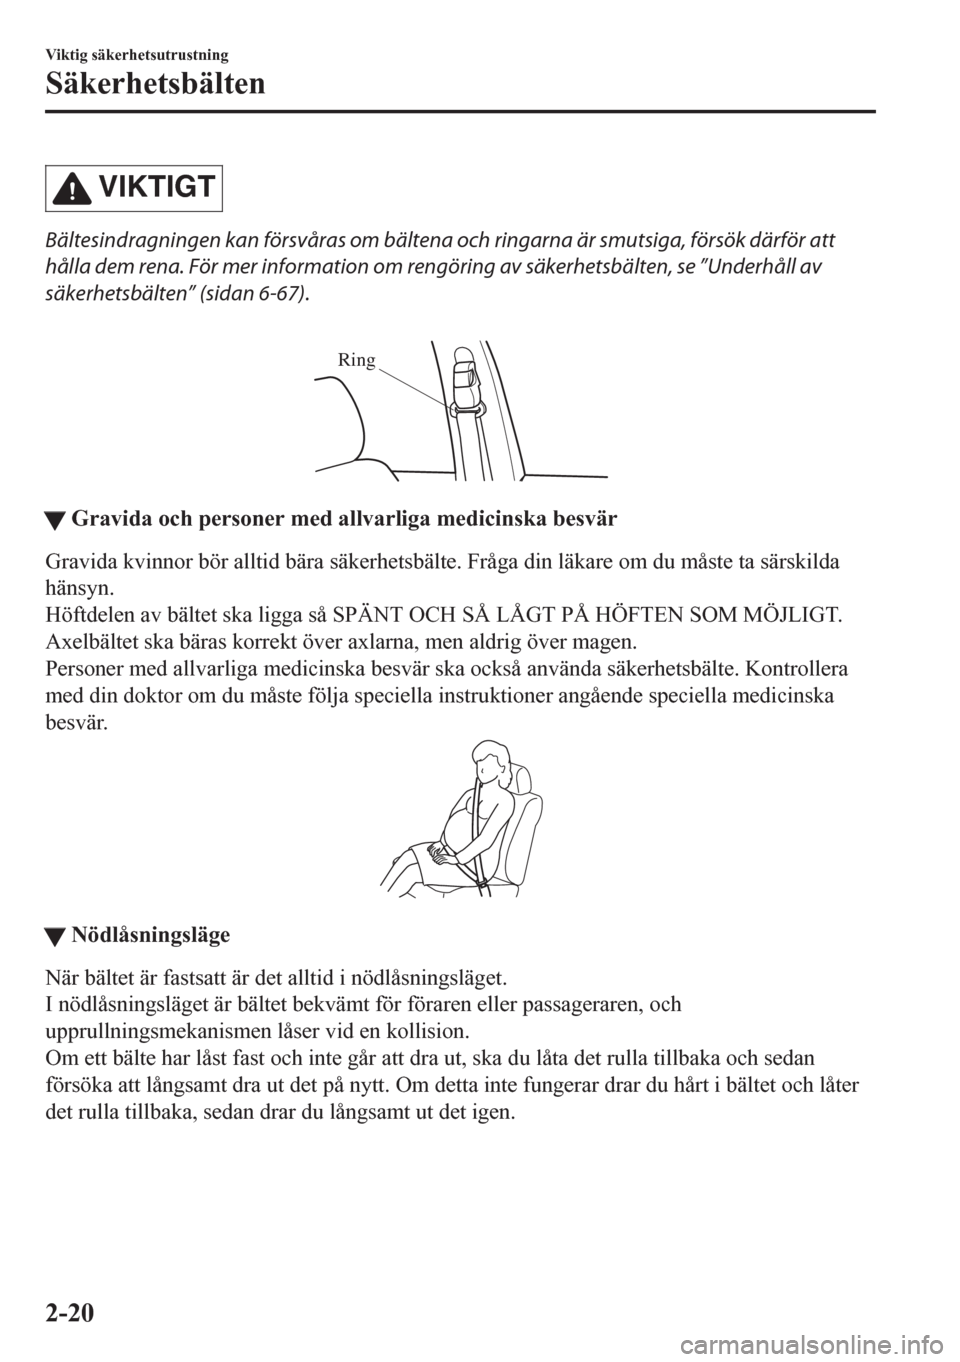 MAZDA MODEL CX-5 2018  Ägarmanual (in Swedish) VIKTIGT
Bältesindragningen kan försvåras om bältena och ringarna är smutsiga, försök därför att
hålla dem rena. För mer information om rengöring av säkerhetsbälten, se ”Underhåll av
s